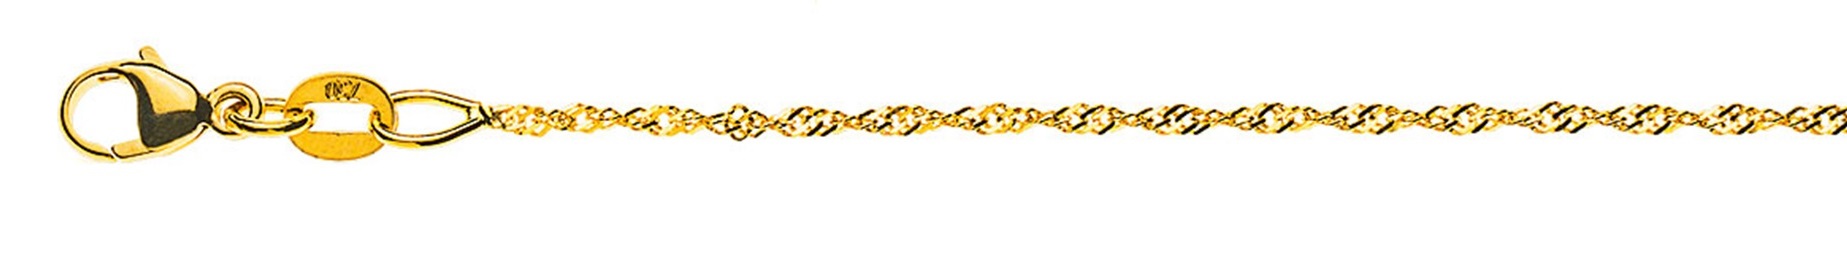 AURONOS Prestige Necklace Yellow Gold 18K Singapore Chain 42cm 1.2mm